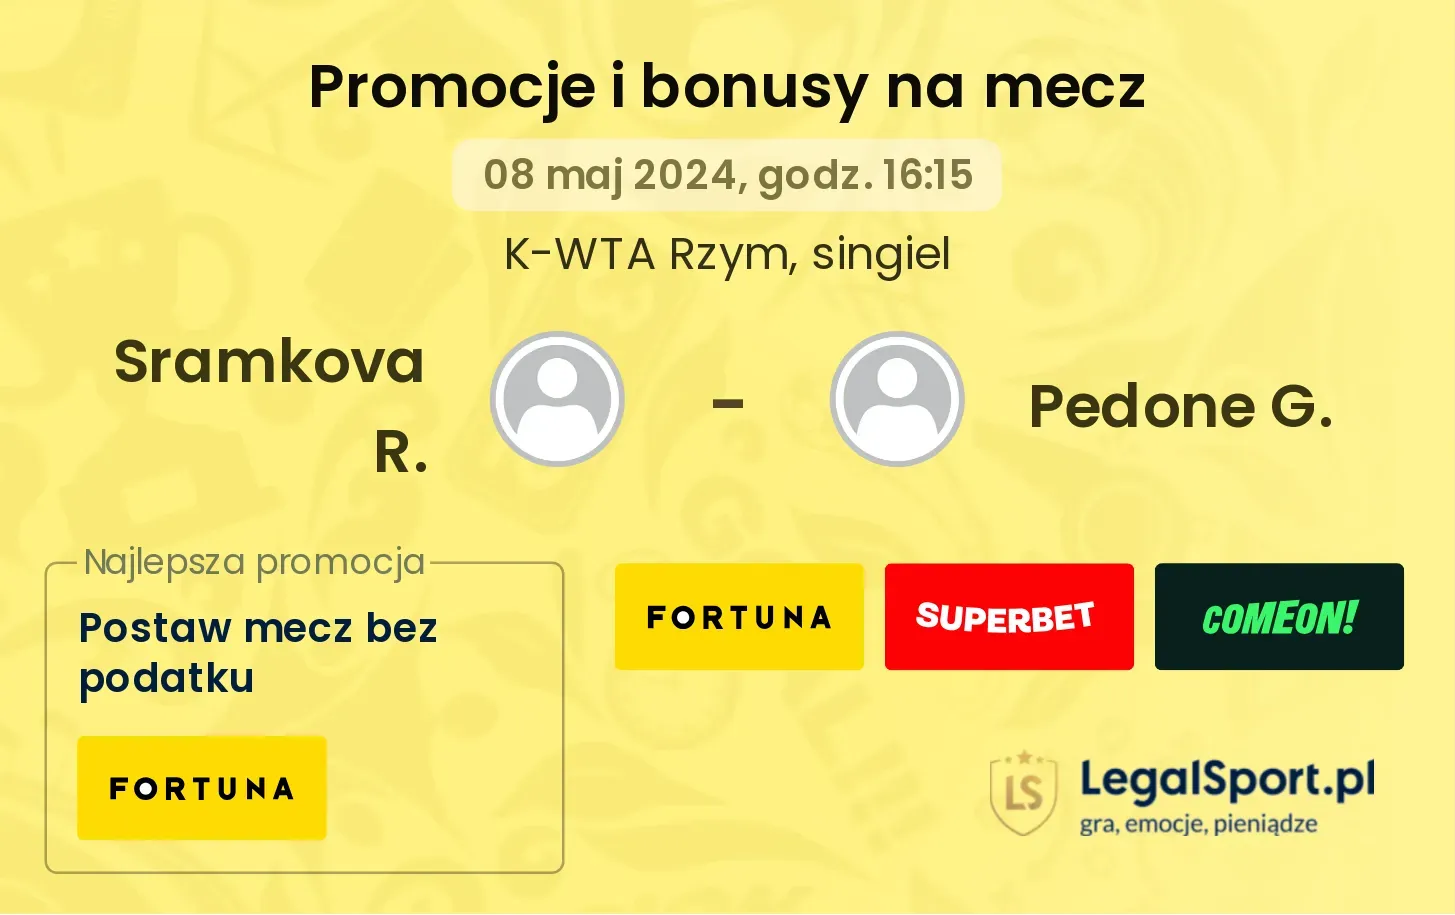 Sramkova R. - Pedone G. promocje bonusy na mecz